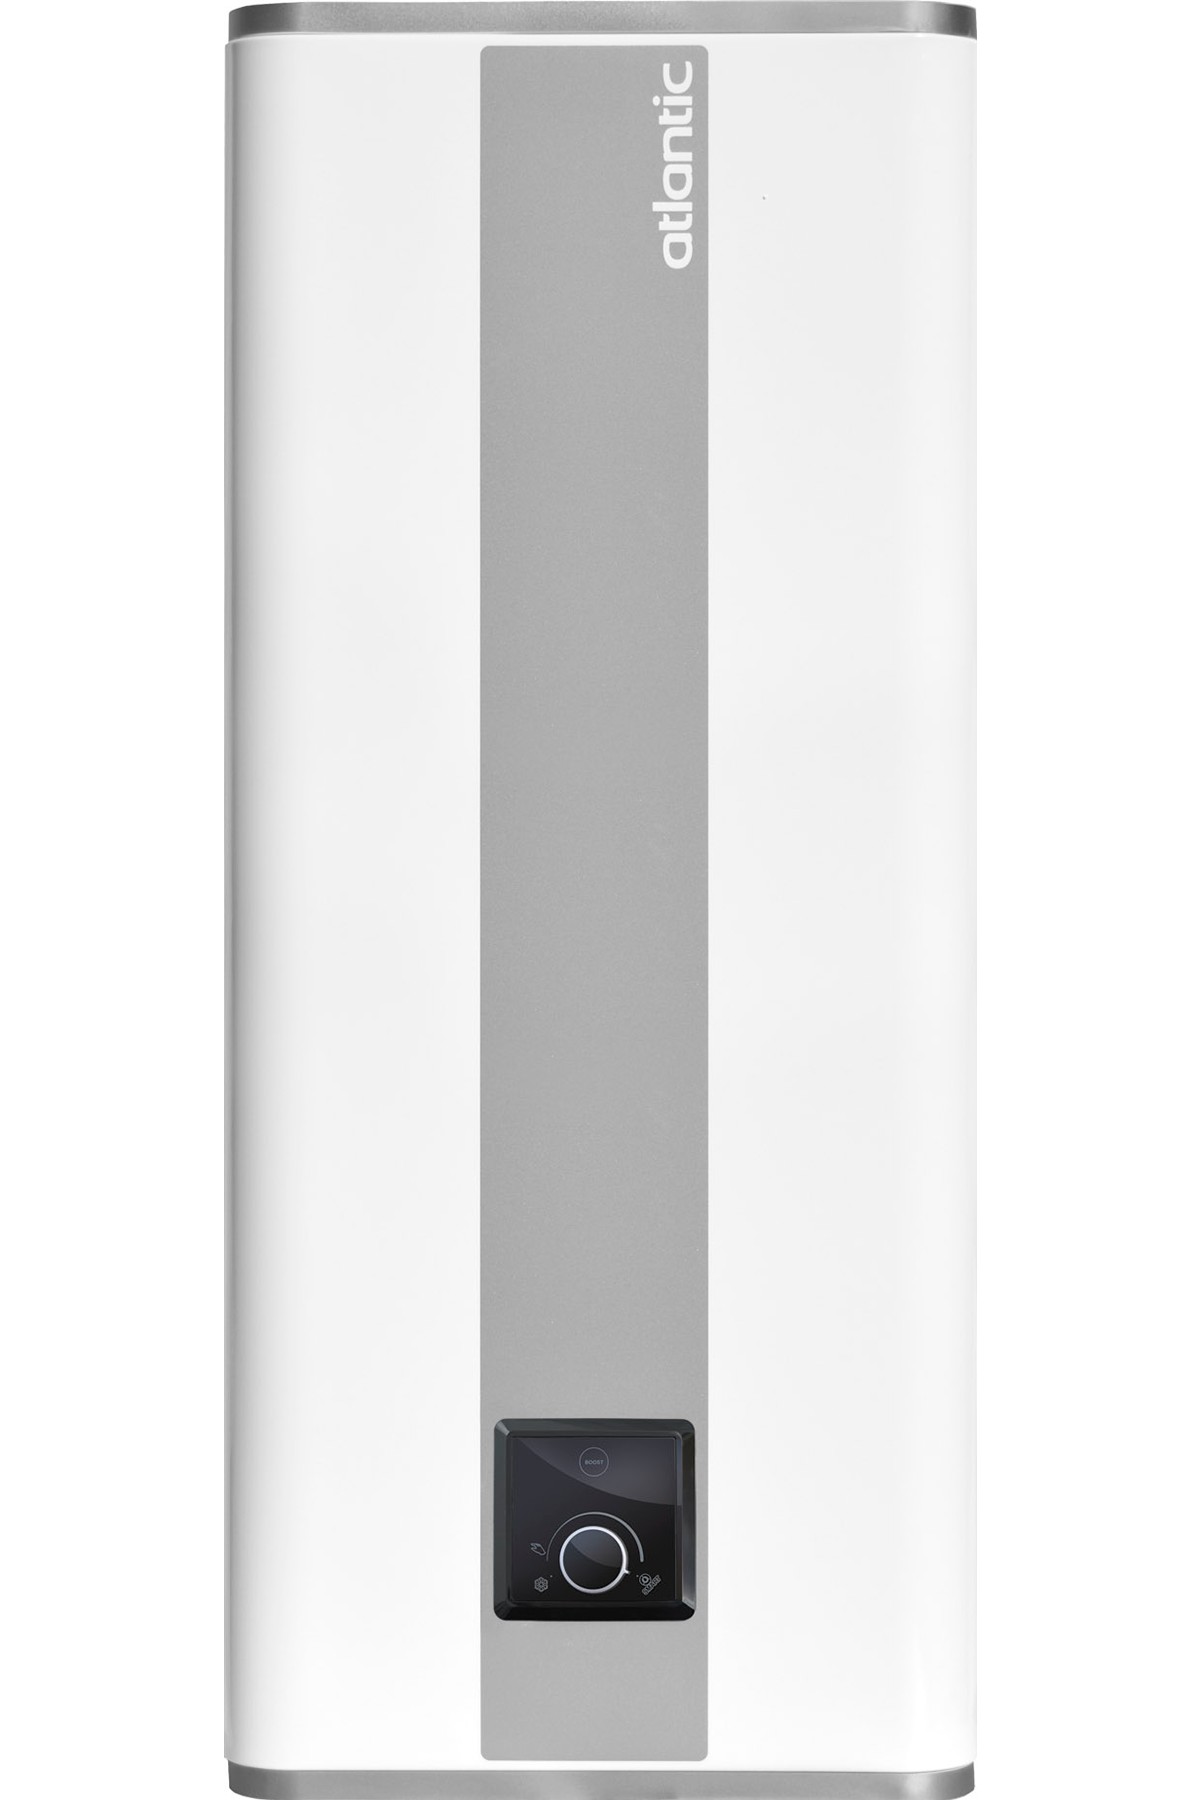 Бойлер Atlantic Vertigo Steatite 100 MP 080 F220-2-EC в интернет-магазине, главное фото